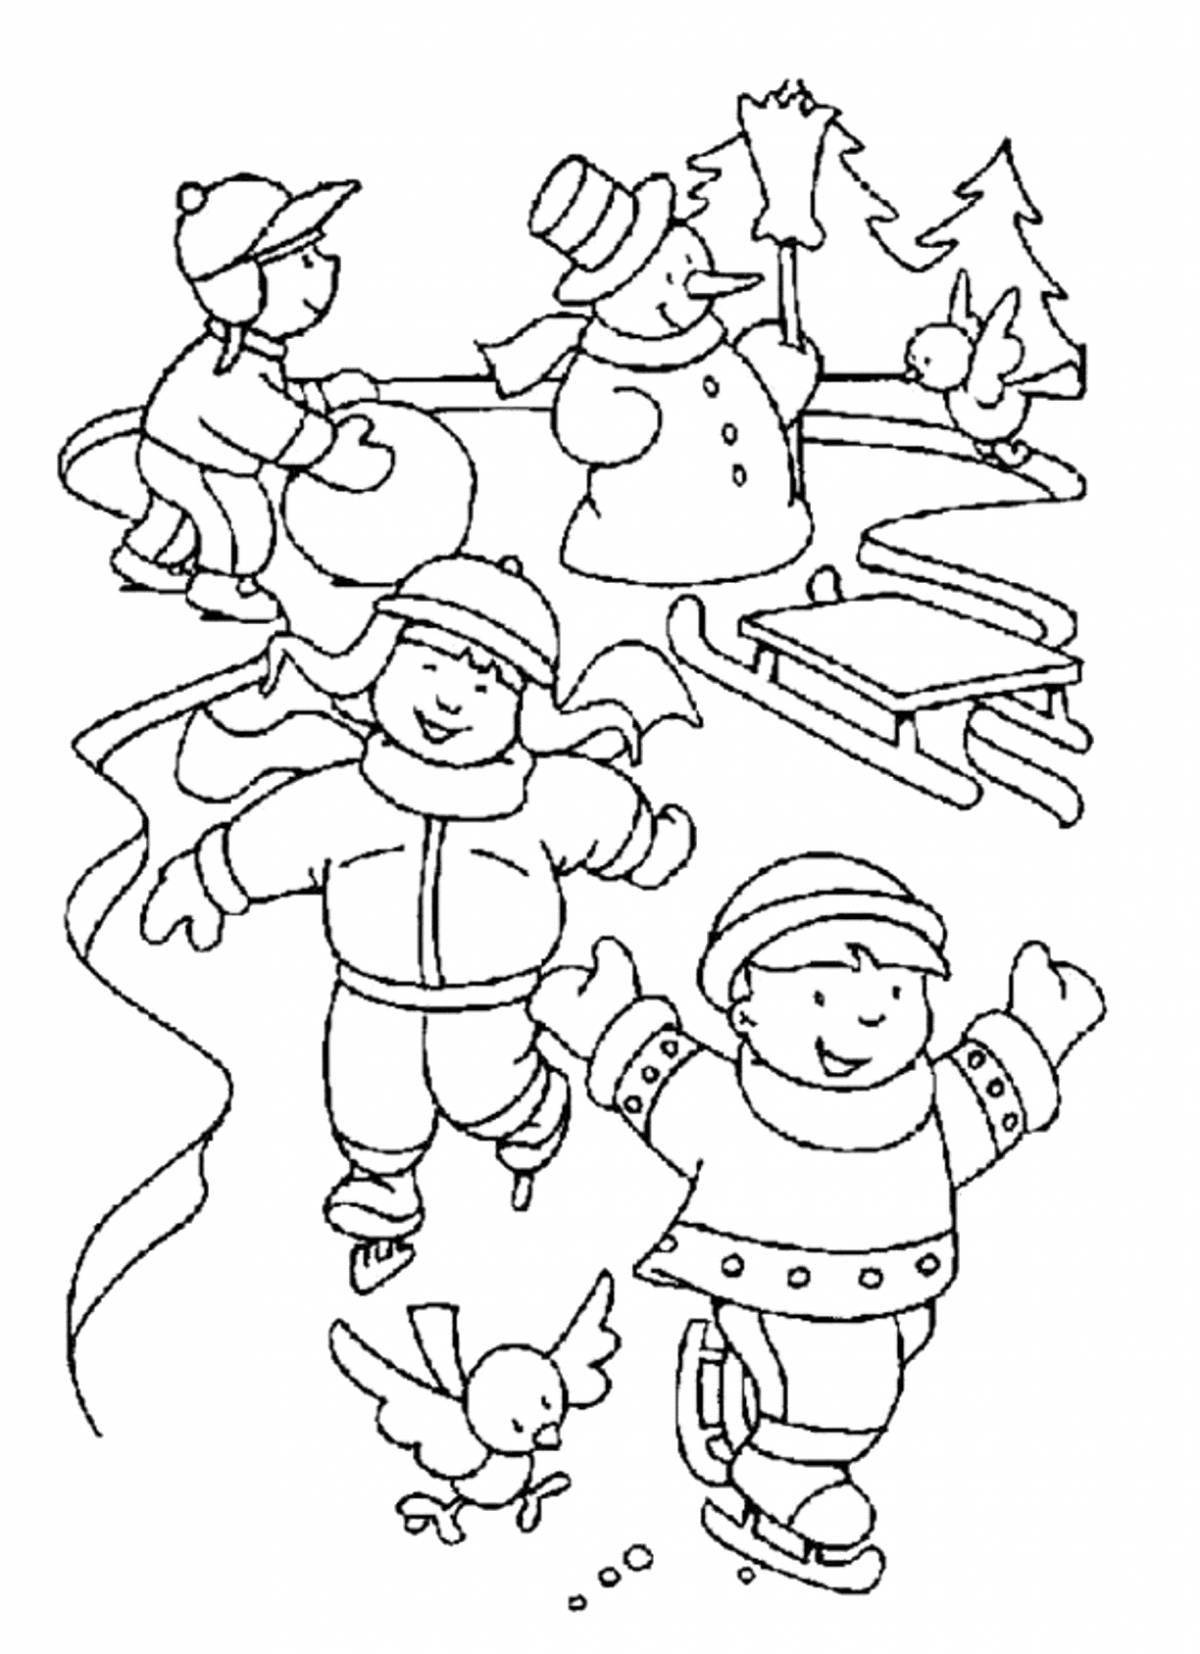 Blissful winter fun coloring book